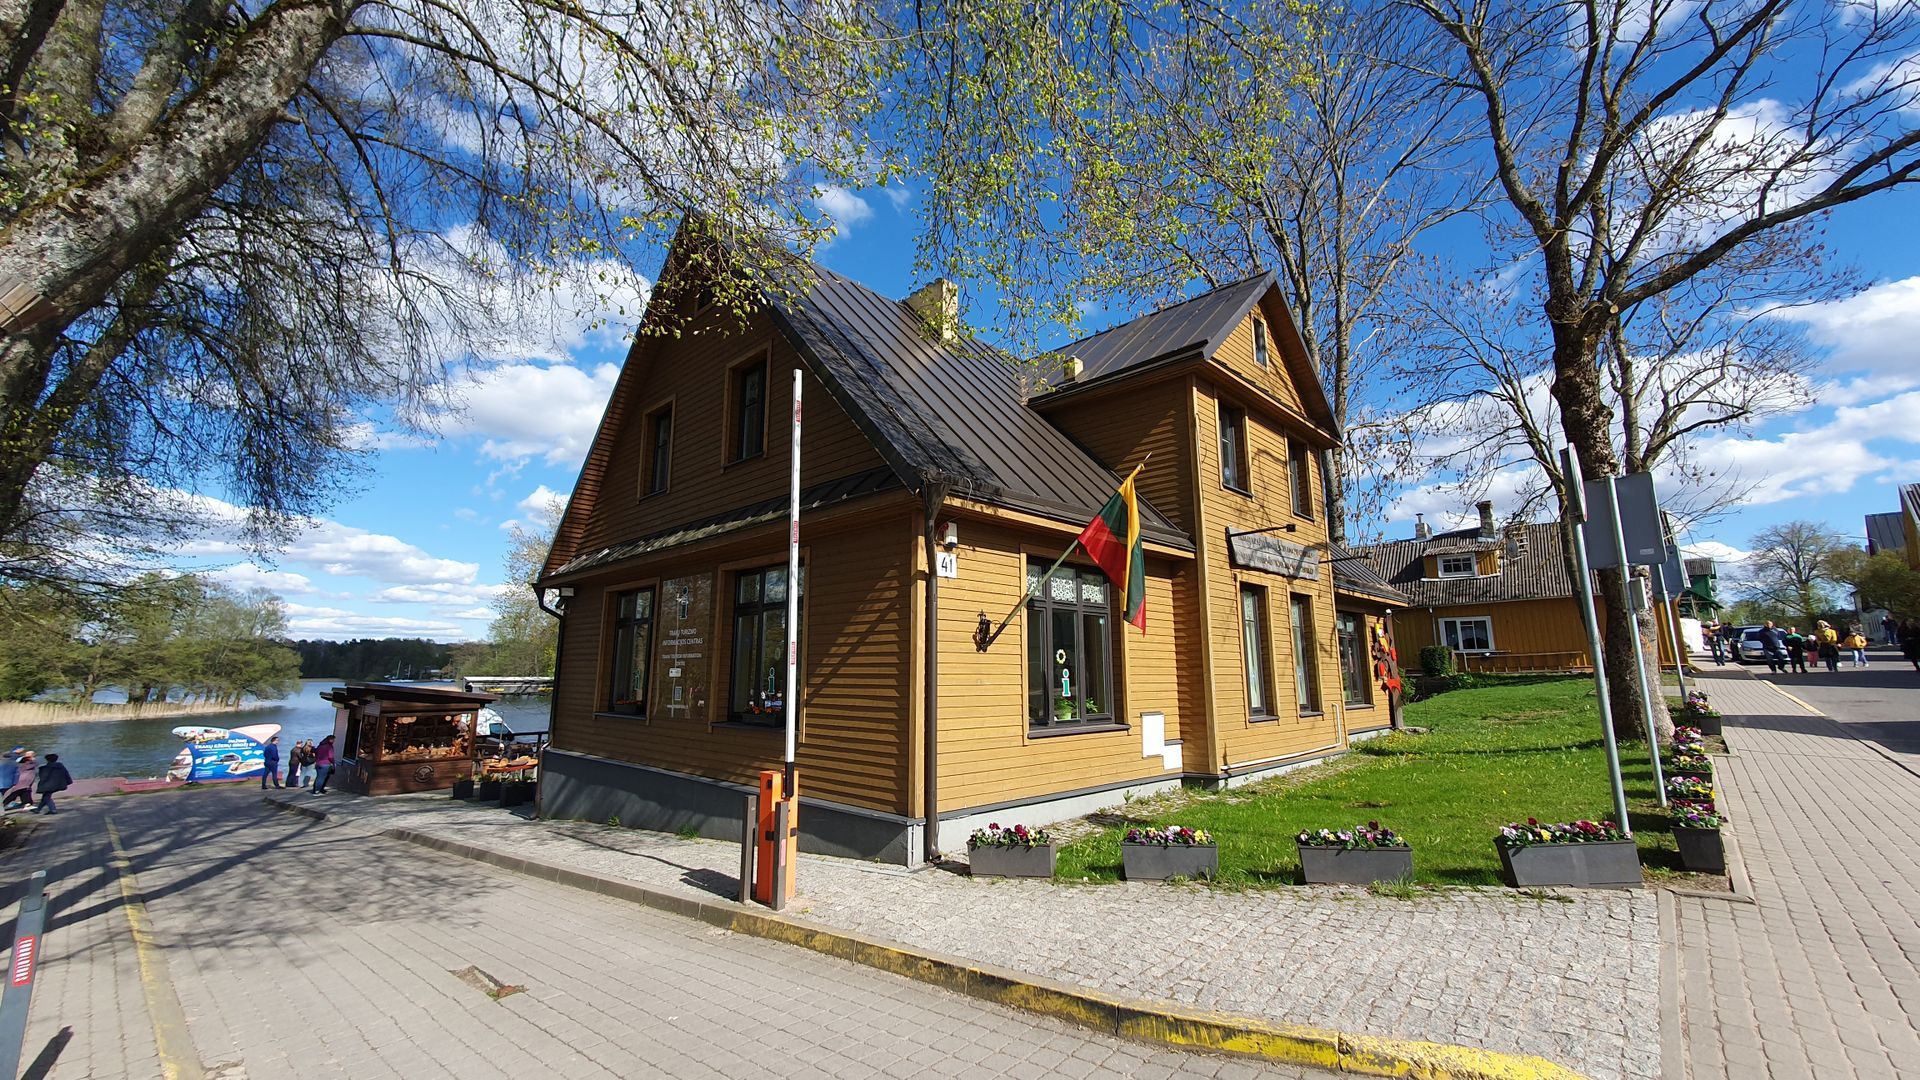 Trakai Tourism Information Centre